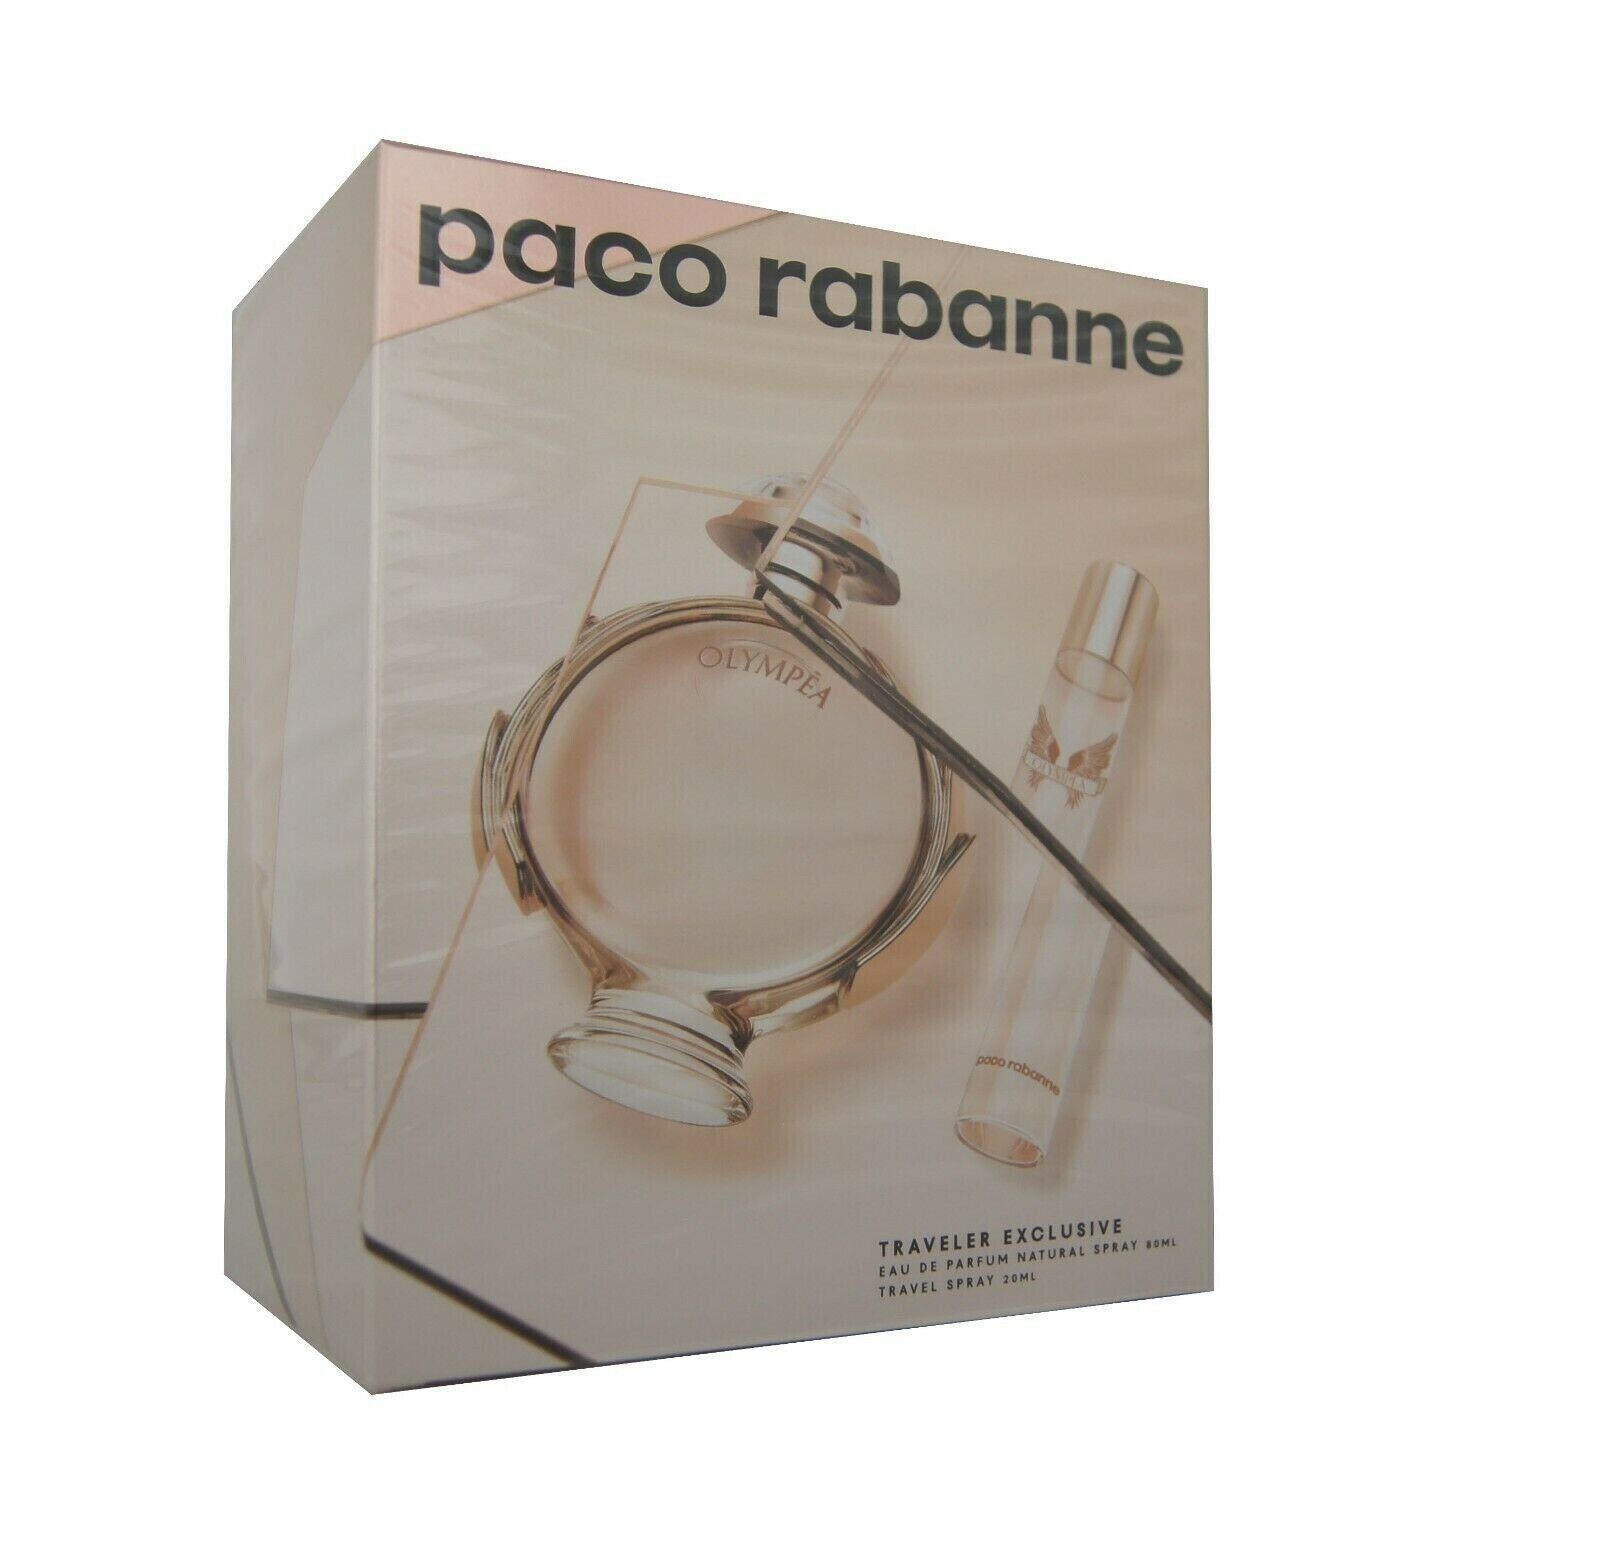 Eau Paco paco de 1-tlg. rabanne de Olympea edp 80ml. Eau Parfum Parfum Rabanne + Duft-Set 20ml.,